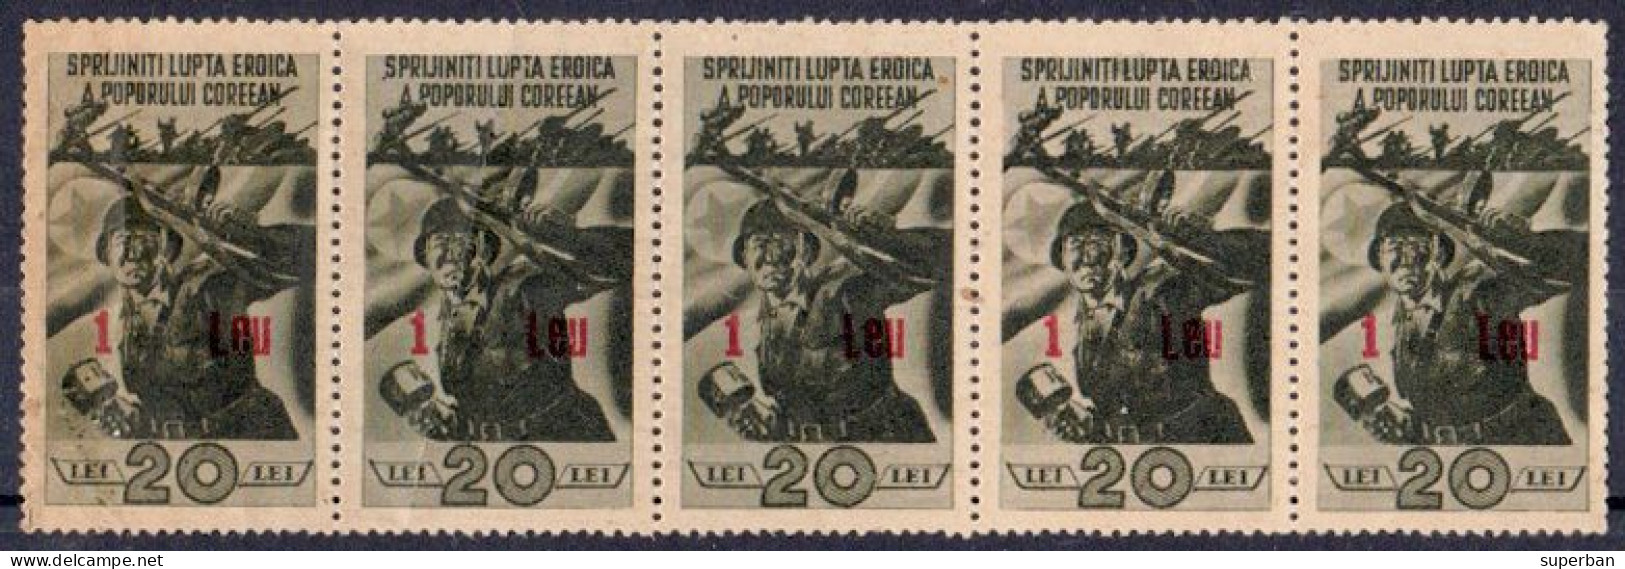 PROPAGANDA / PROPAGANDE : SPRIJINITI LUPTA EROICA A POPORULUI COREEAN - BANDE / STRIP : 5 X 1 / 20 LEI - 1952 (al637) - Revenue Stamps